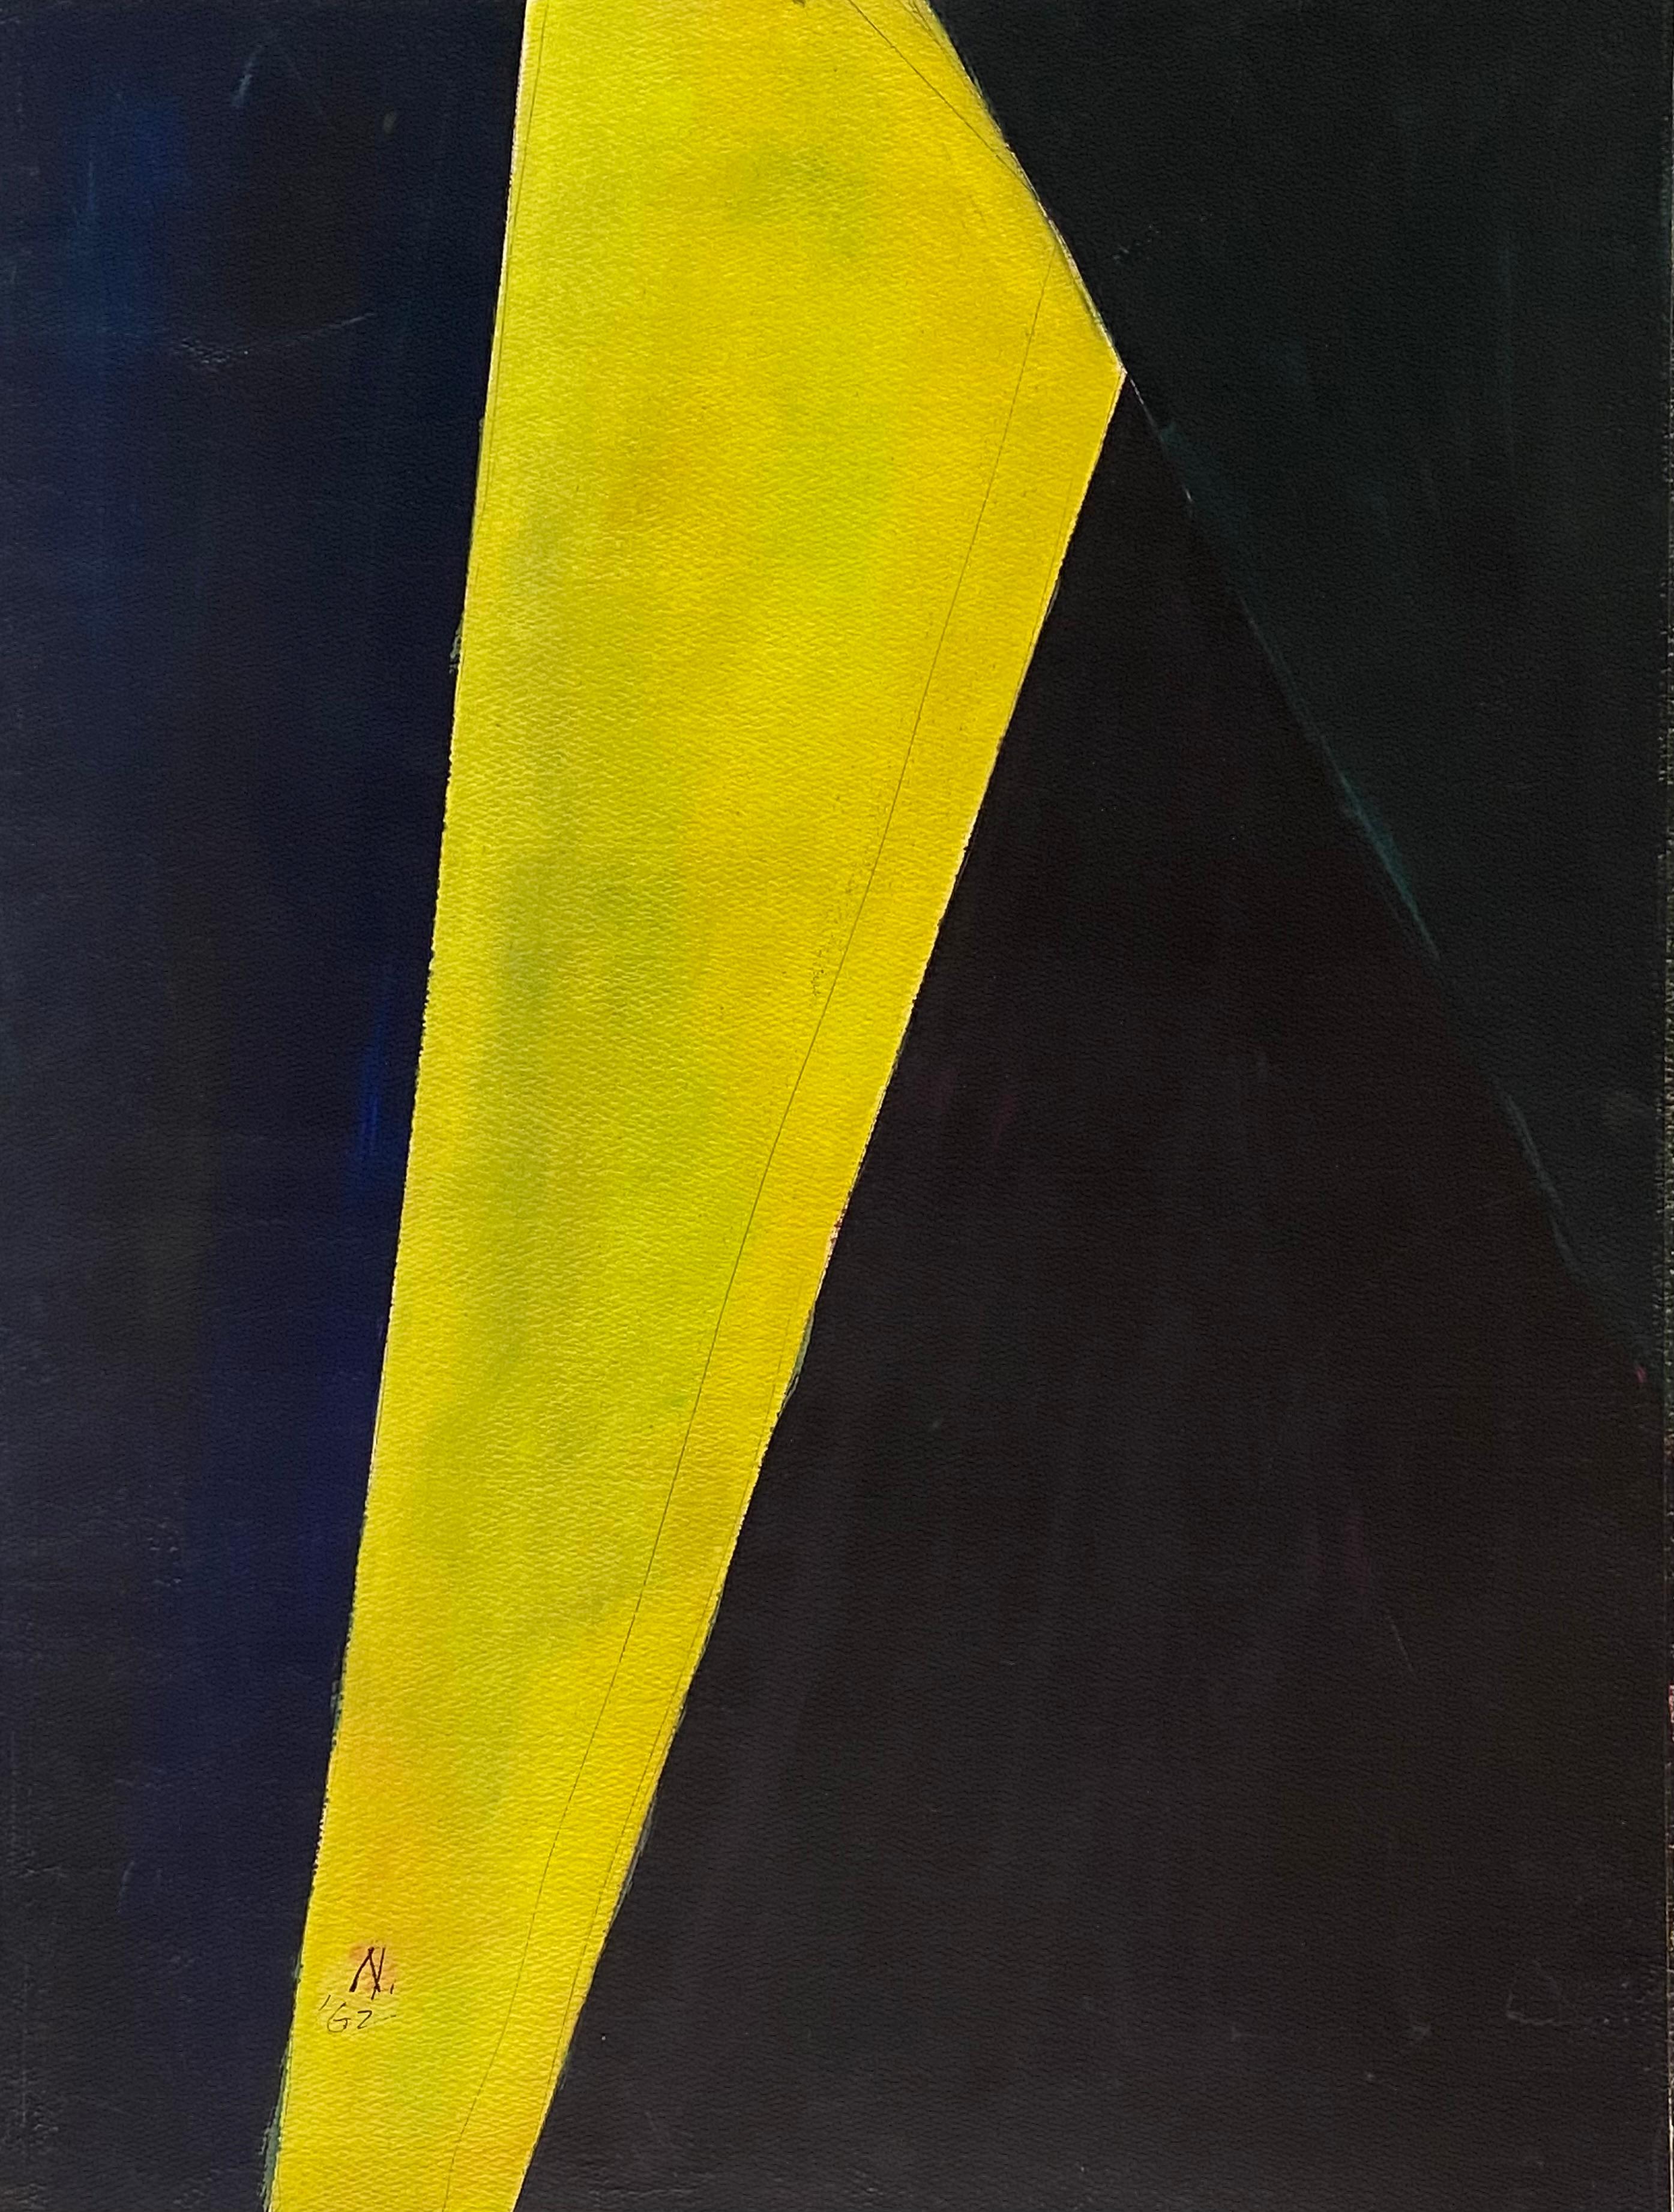 Abstrait en noir et jaune - Art de Lloyd Raymond Ney